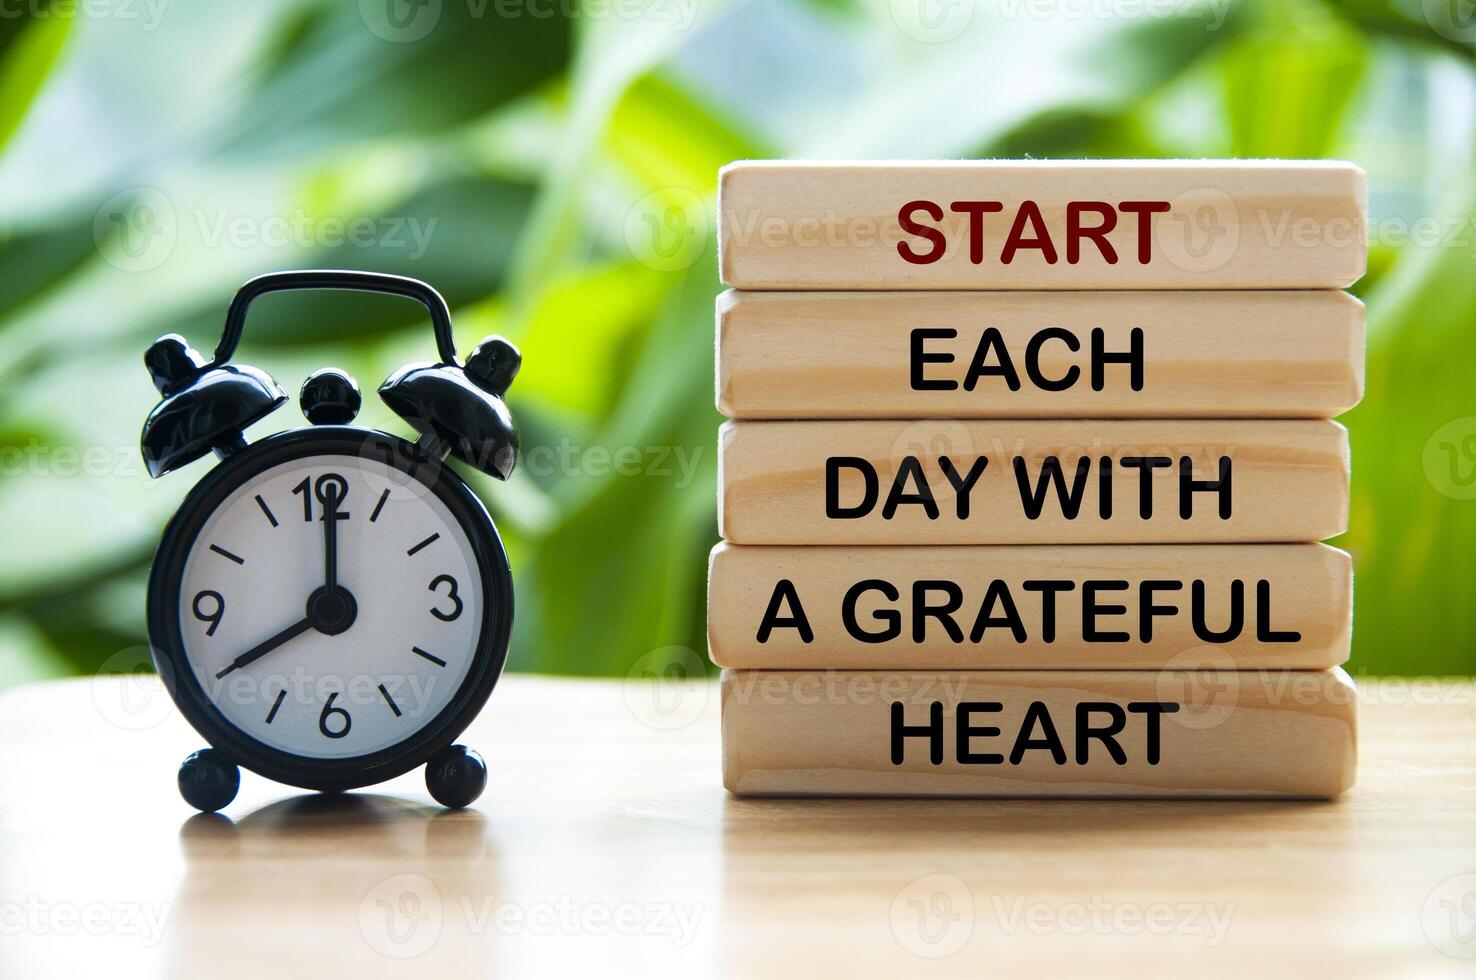 Start jeder Tag mit ein dankbar Herz Text auf hölzern Blöcke mit Alarm Uhr und Natur Hintergrund. motivierend Konzept foto